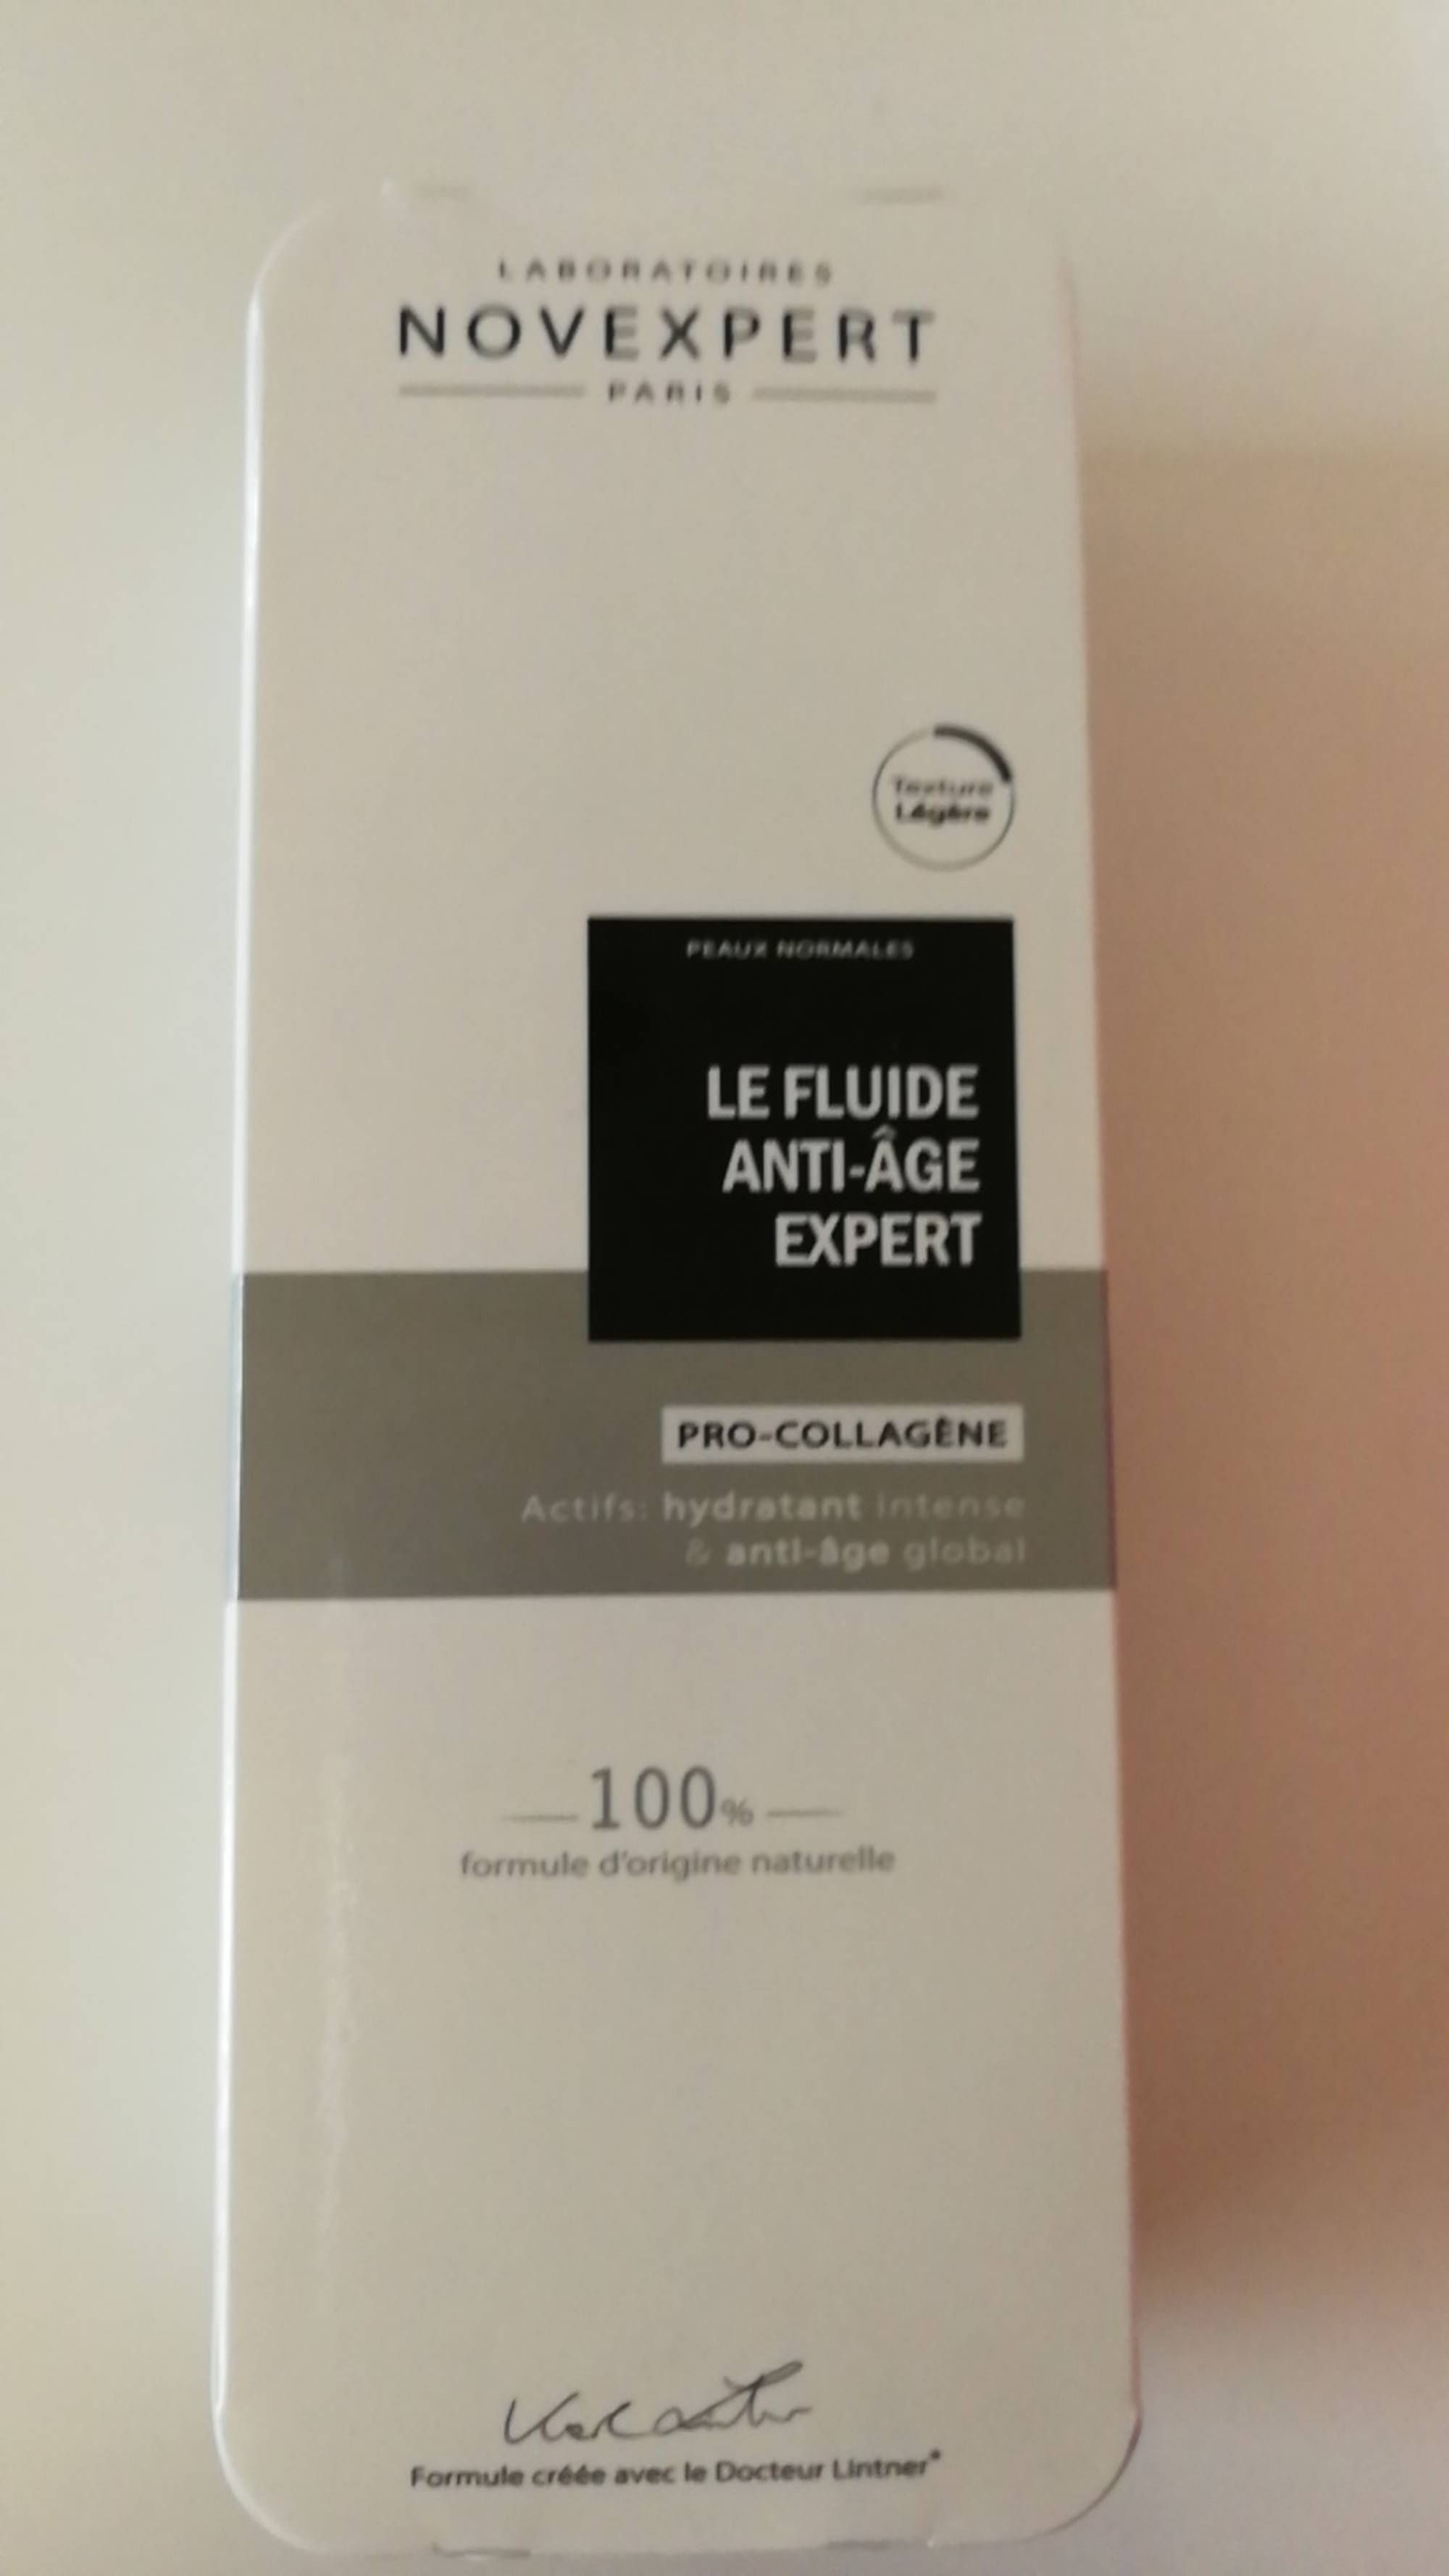 NOVEXPERT - Pro-collagène - Le fluide anti-âge expert